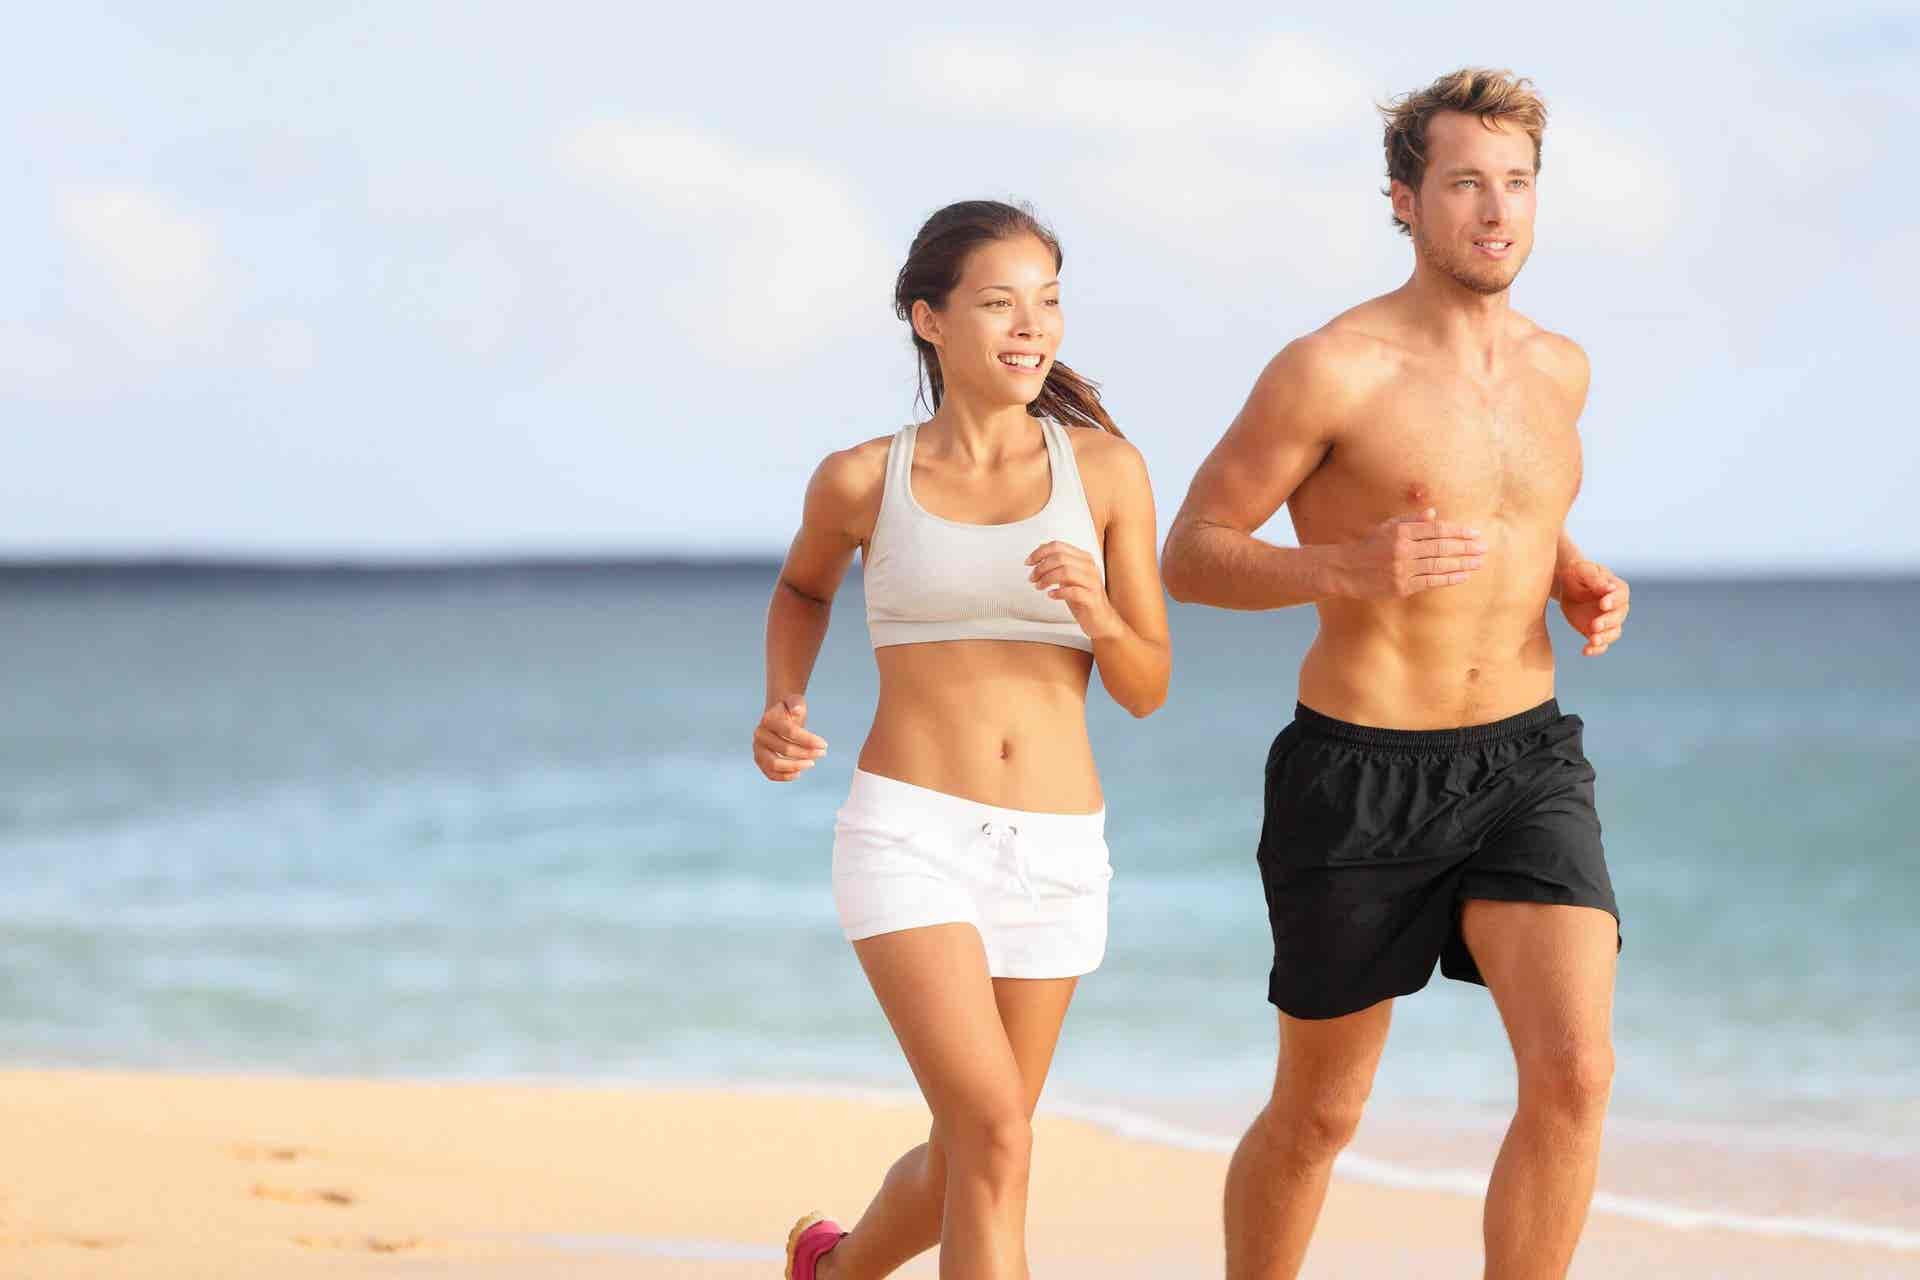 El ejercicio puede ayudar con la digestión en verano.